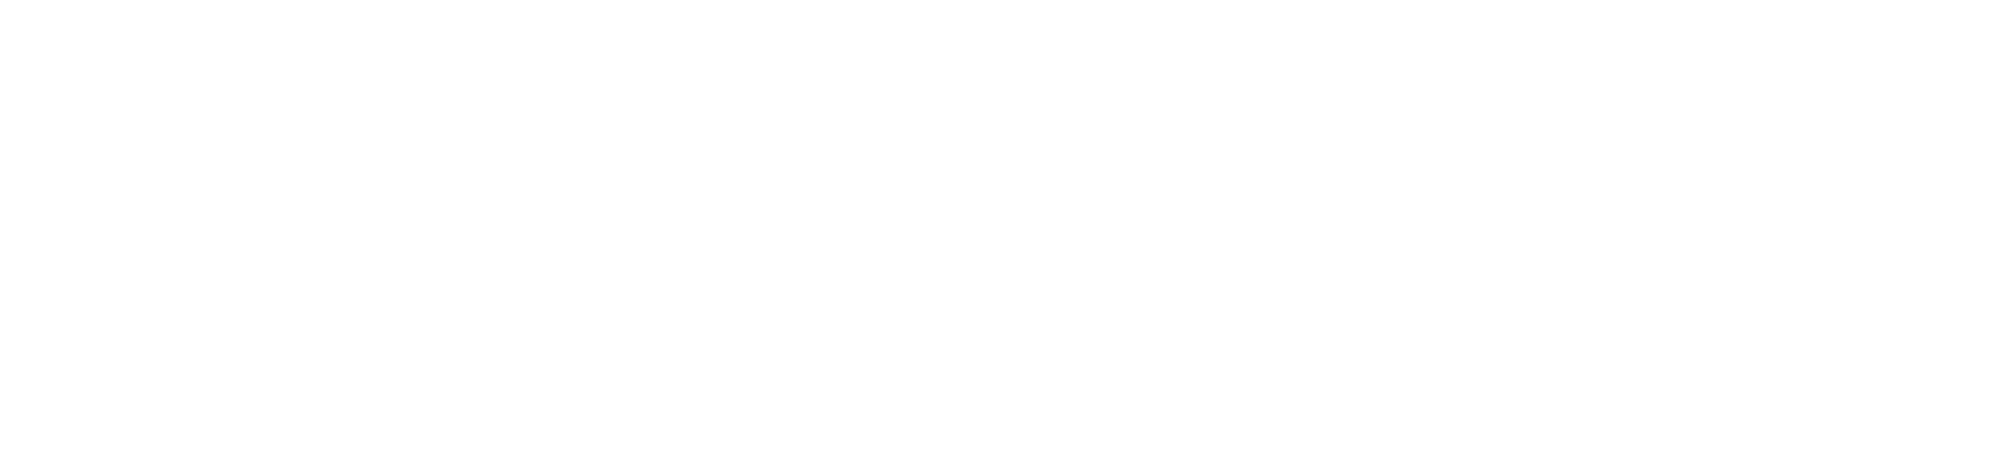 Visitez la Cap-Martin Atelier bord de mer Curensology 2020 Spring/Summer Collection